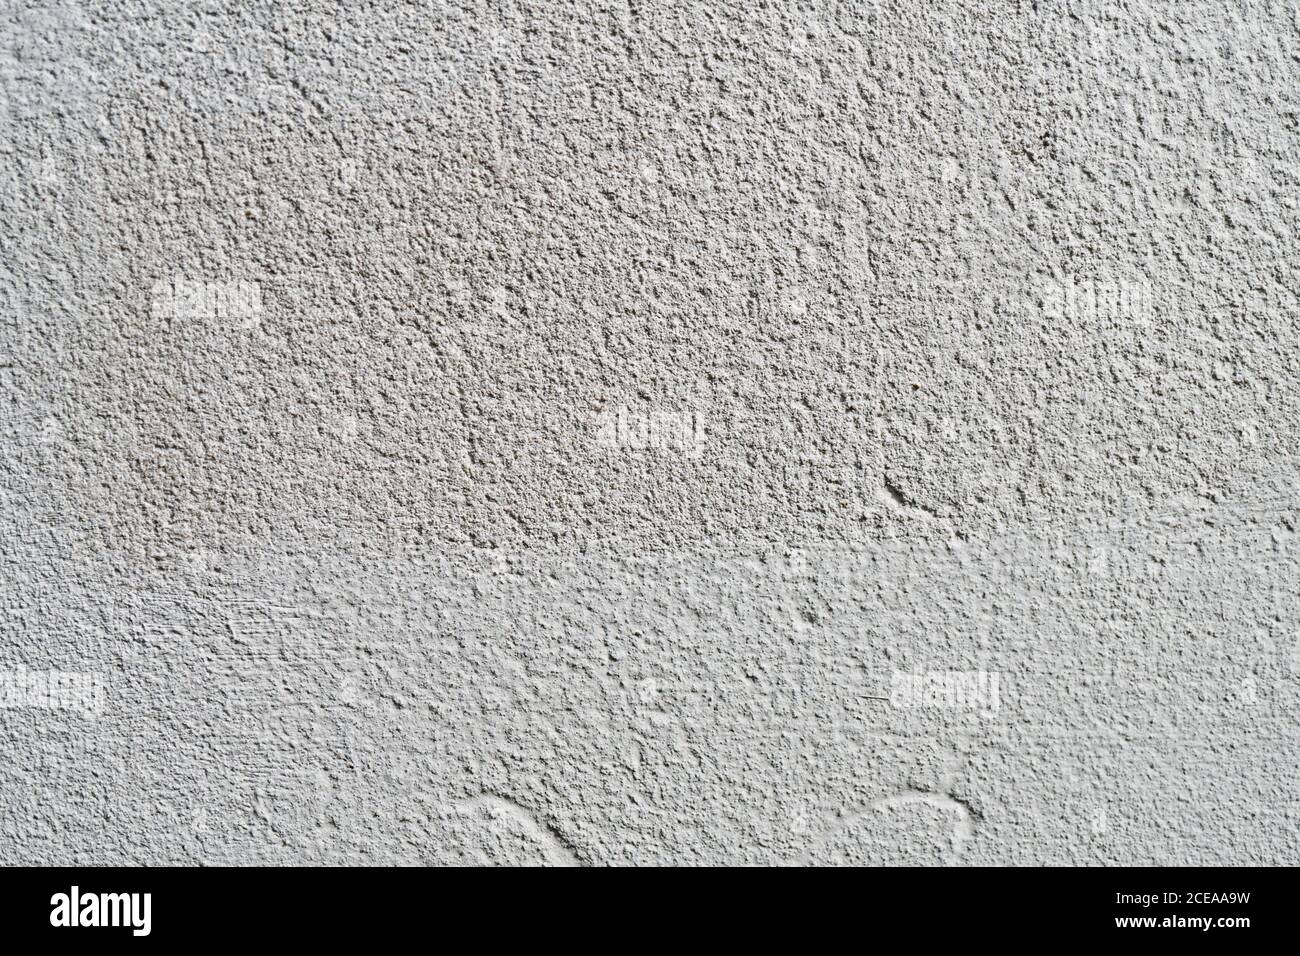 Weiße oder graue Betonwand ist eine dekorative oder strukturierte Oberfläche. Kann als Hintergrund oder für Designzwecke verwendet werden Stockfoto